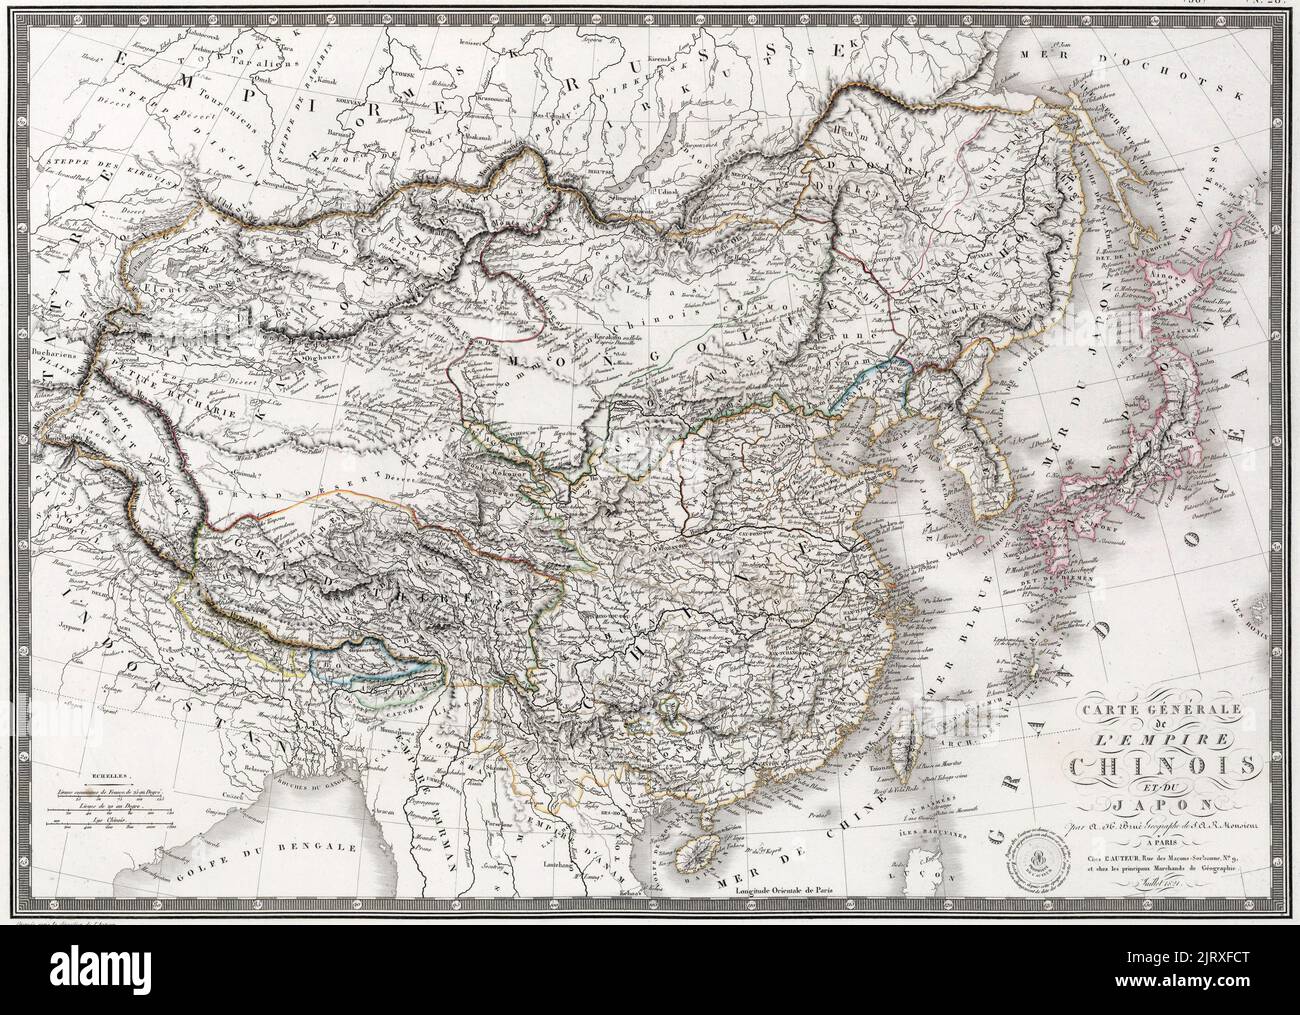 Mapa general del Imperio Chino y Japón': Un mapa del Imperio Qing y Japón publicado por J. Andriveau-Goujon en París. Observe el curso inferior del Río Amarillo antes de las inundaciones de 1850s, alrededor de 1821 Foto de stock